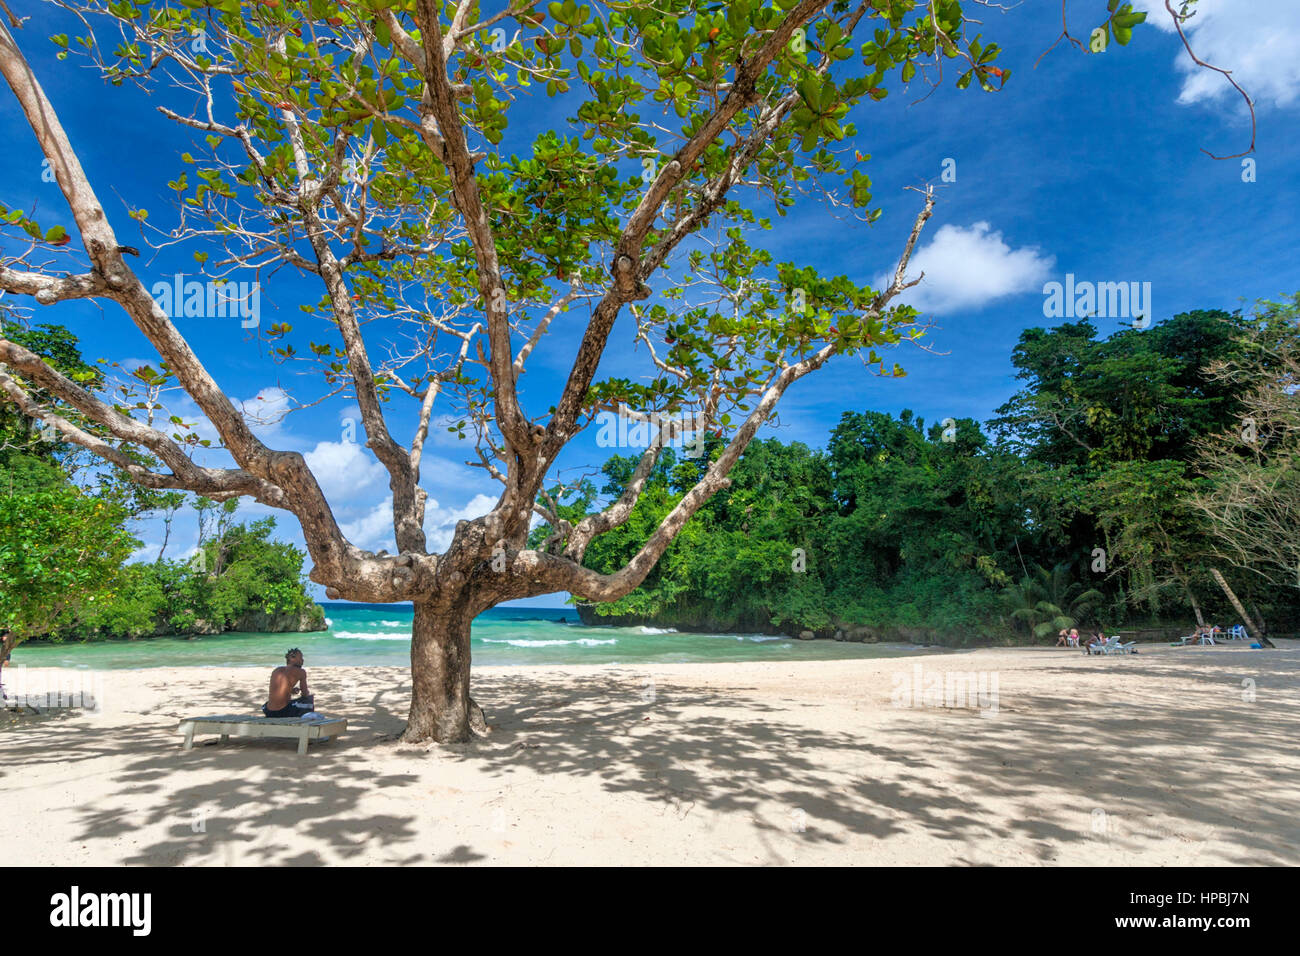 La Jamaïque Port Antonio Frenchmens Cove belle plage dans un jardin tropical avec un minéral river Banque D'Images